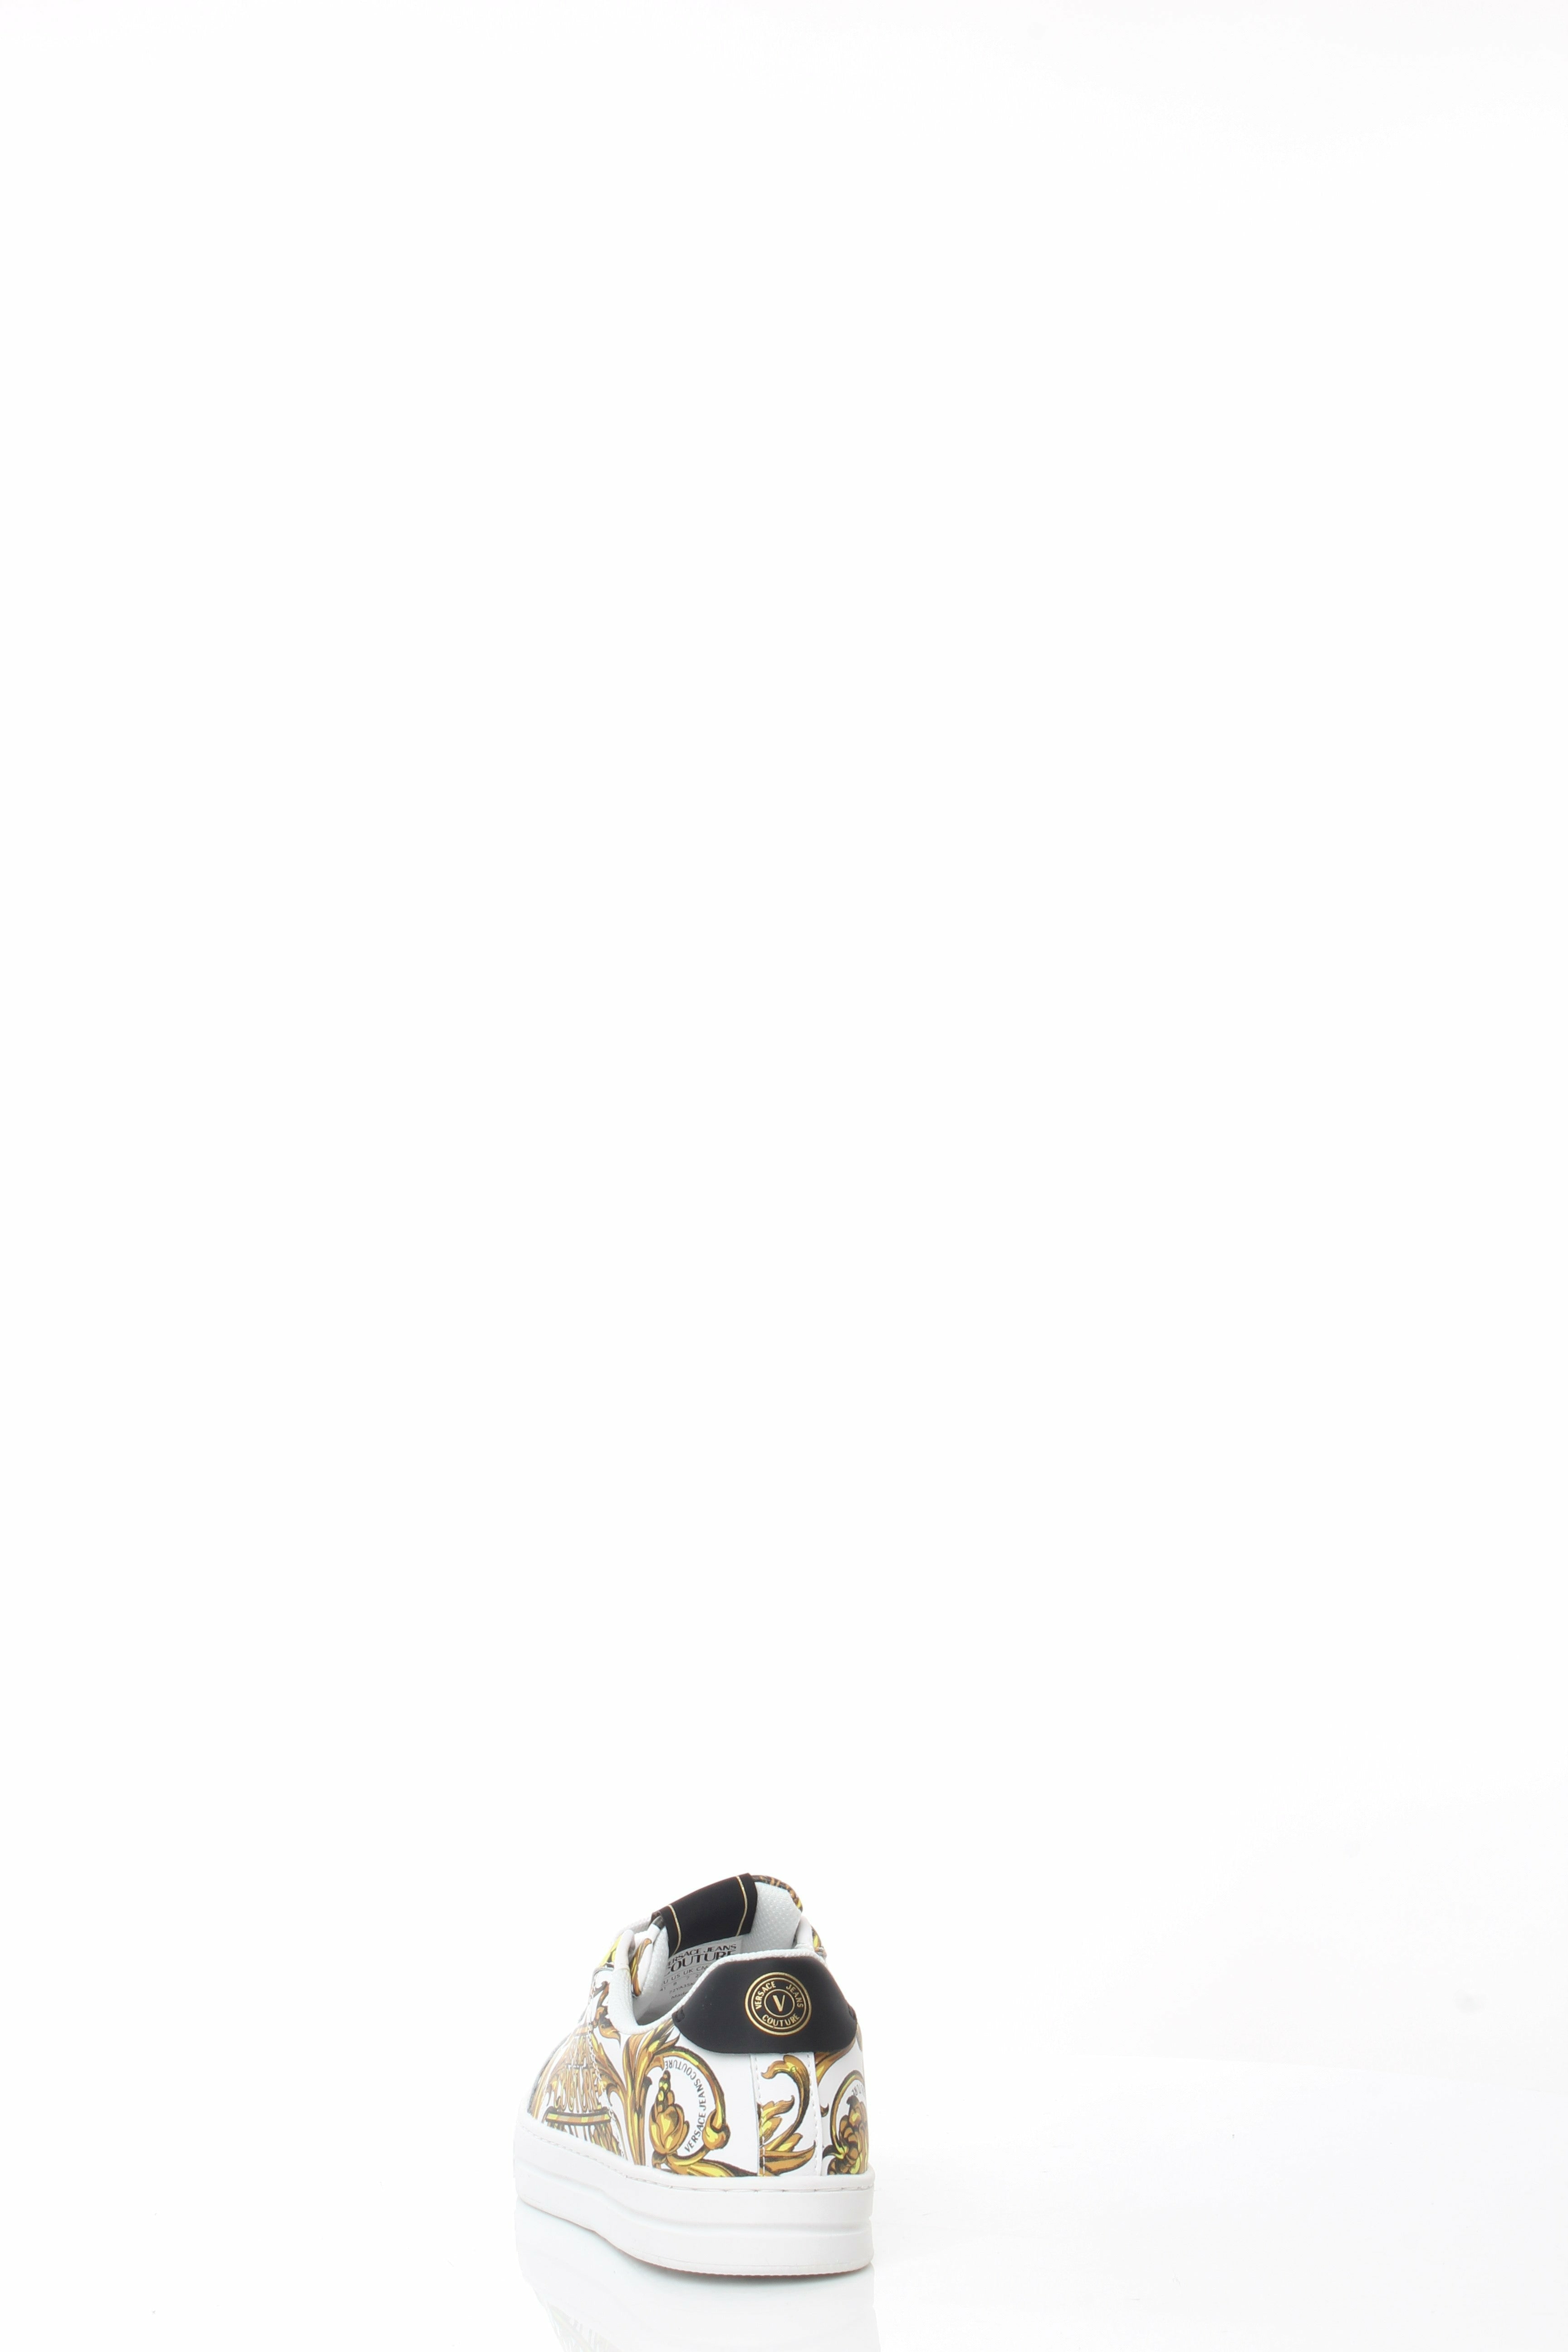 VERSACEJEANSCOUTURE 72YA3SK6-ZP100 sneakers in pelle con stampa barocca all-over, logo sul retro e patch con logo sulla linguetta